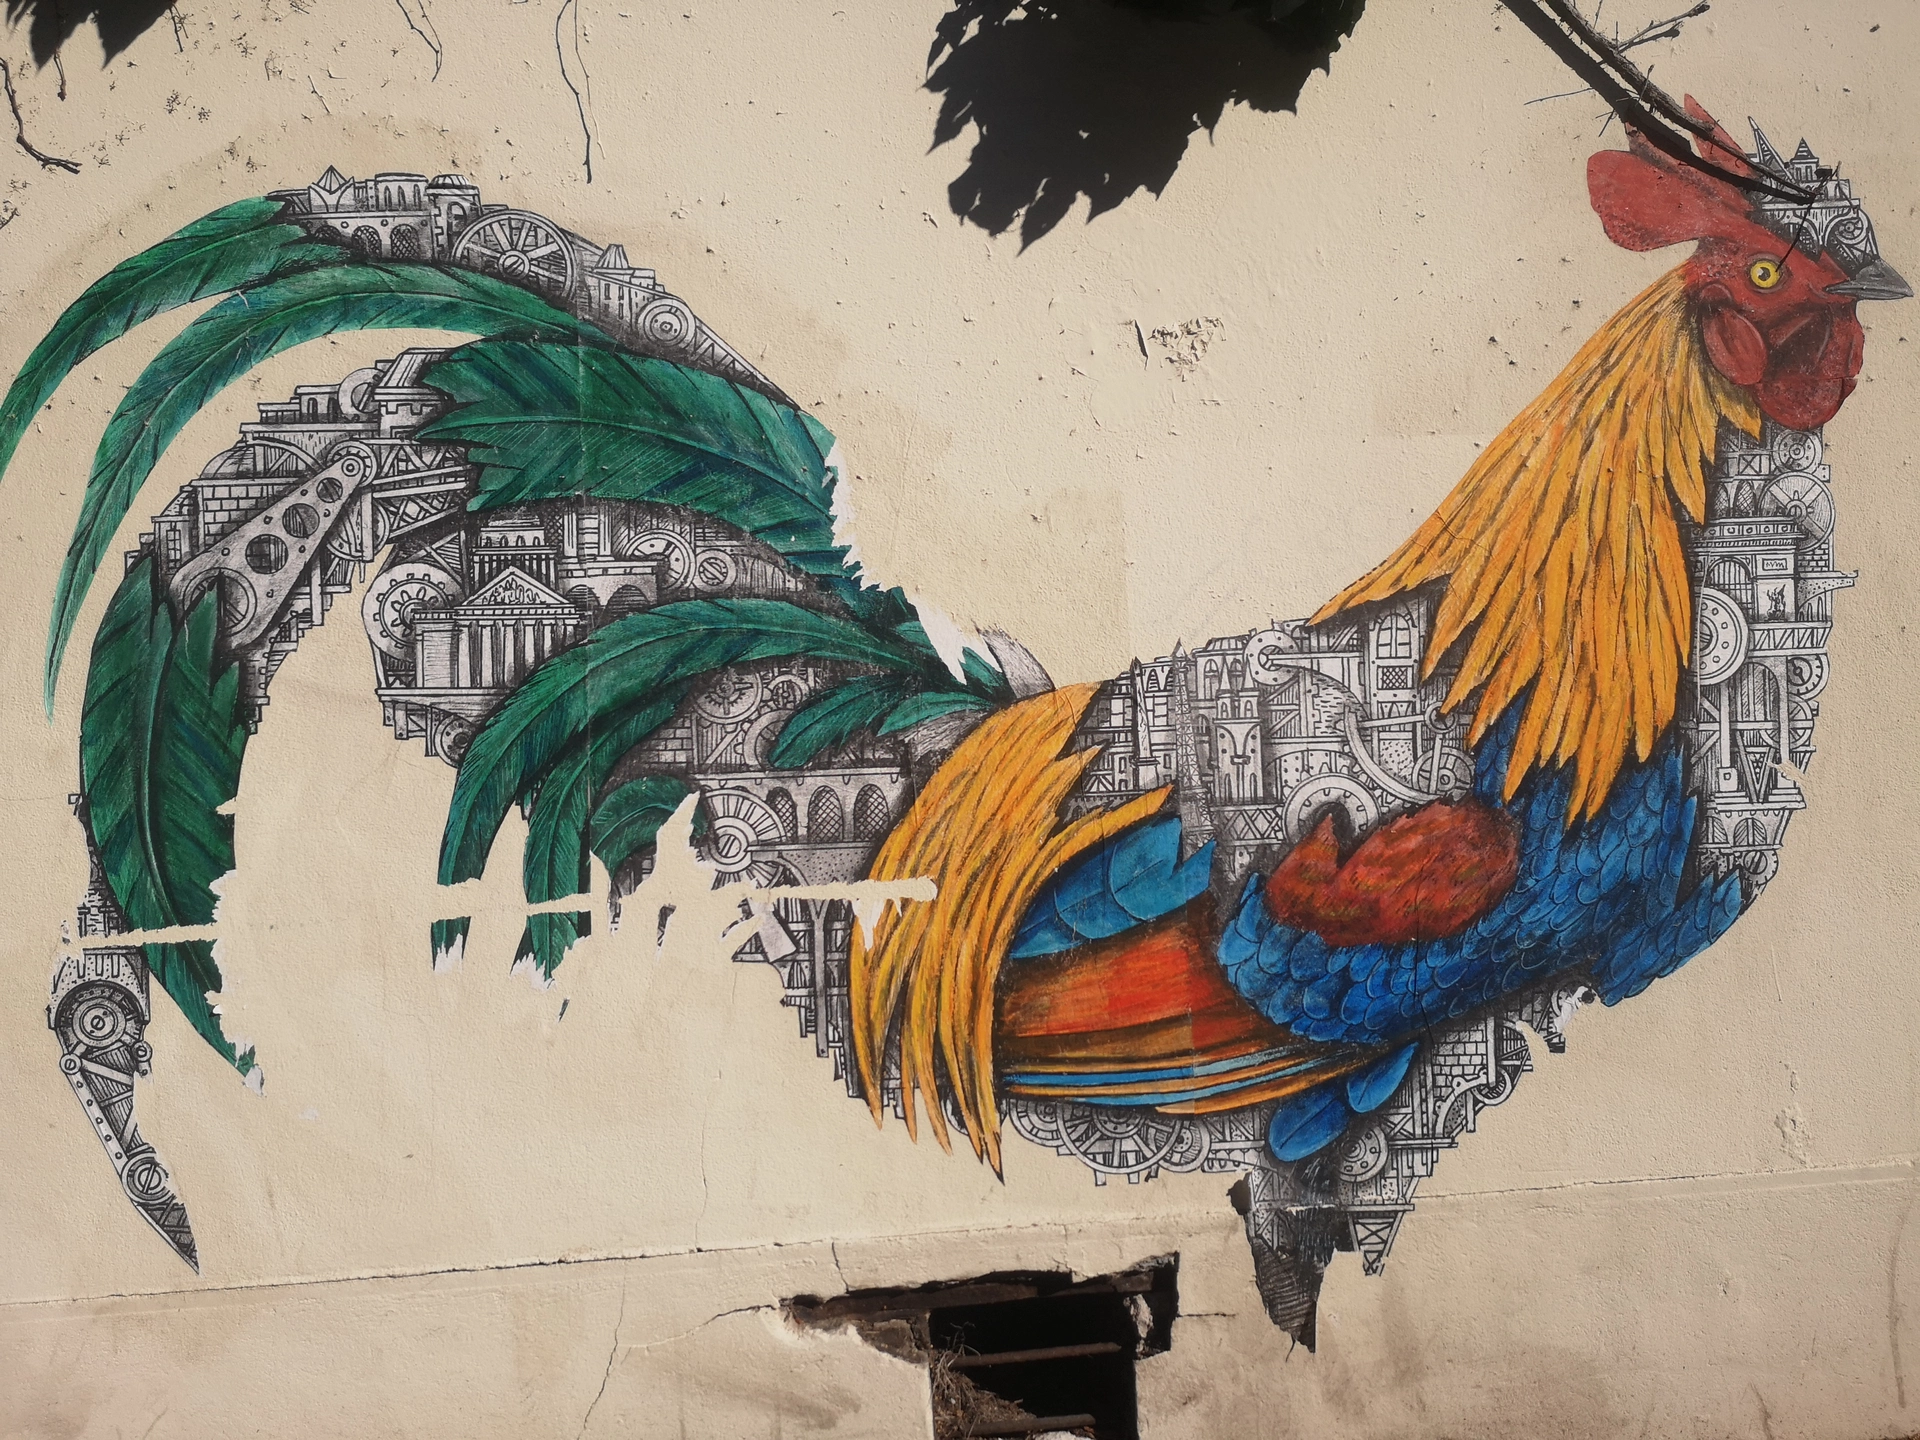 Oeuvre de Street Art réalisée par Ardif à Montreuil